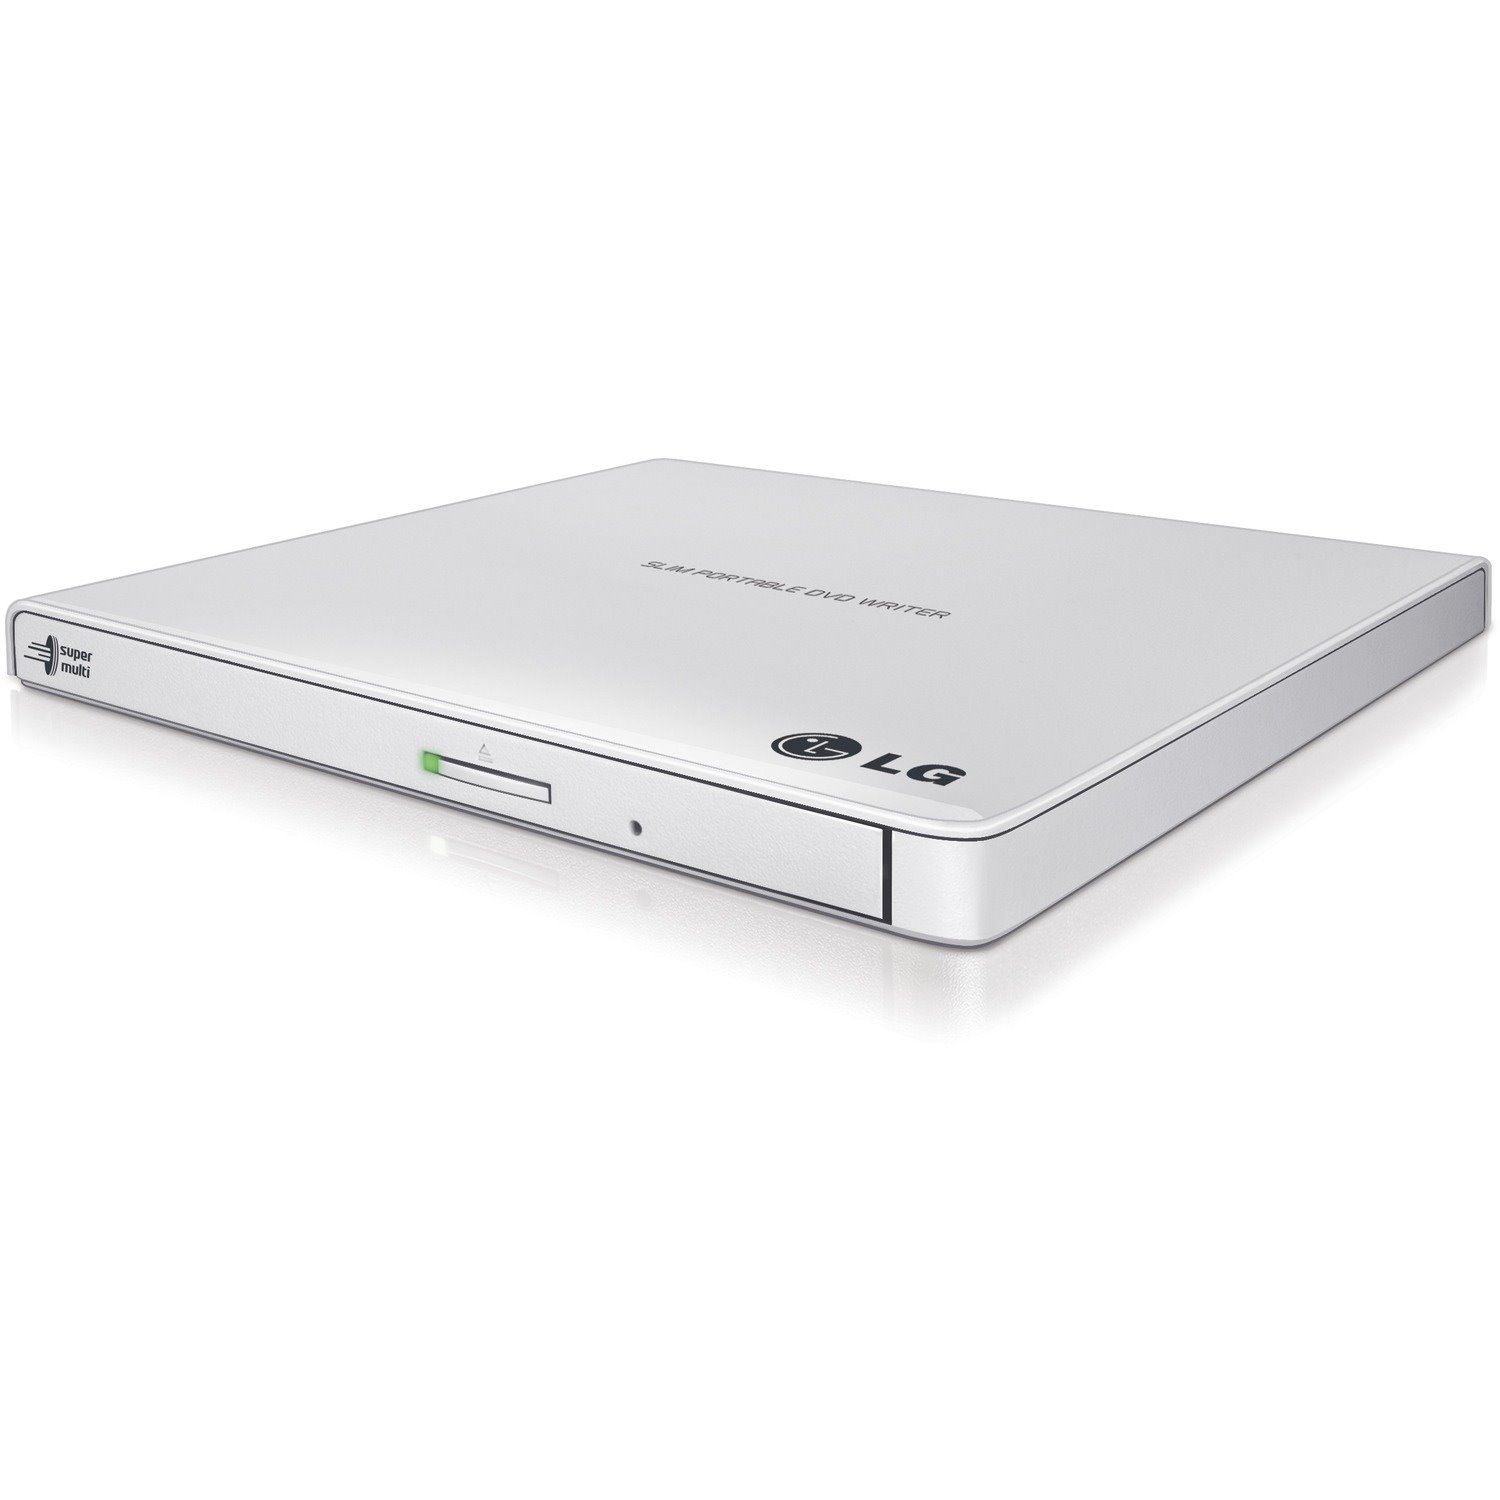 LG GP65NW60 DVD-Writer - External - Retail Pack - White